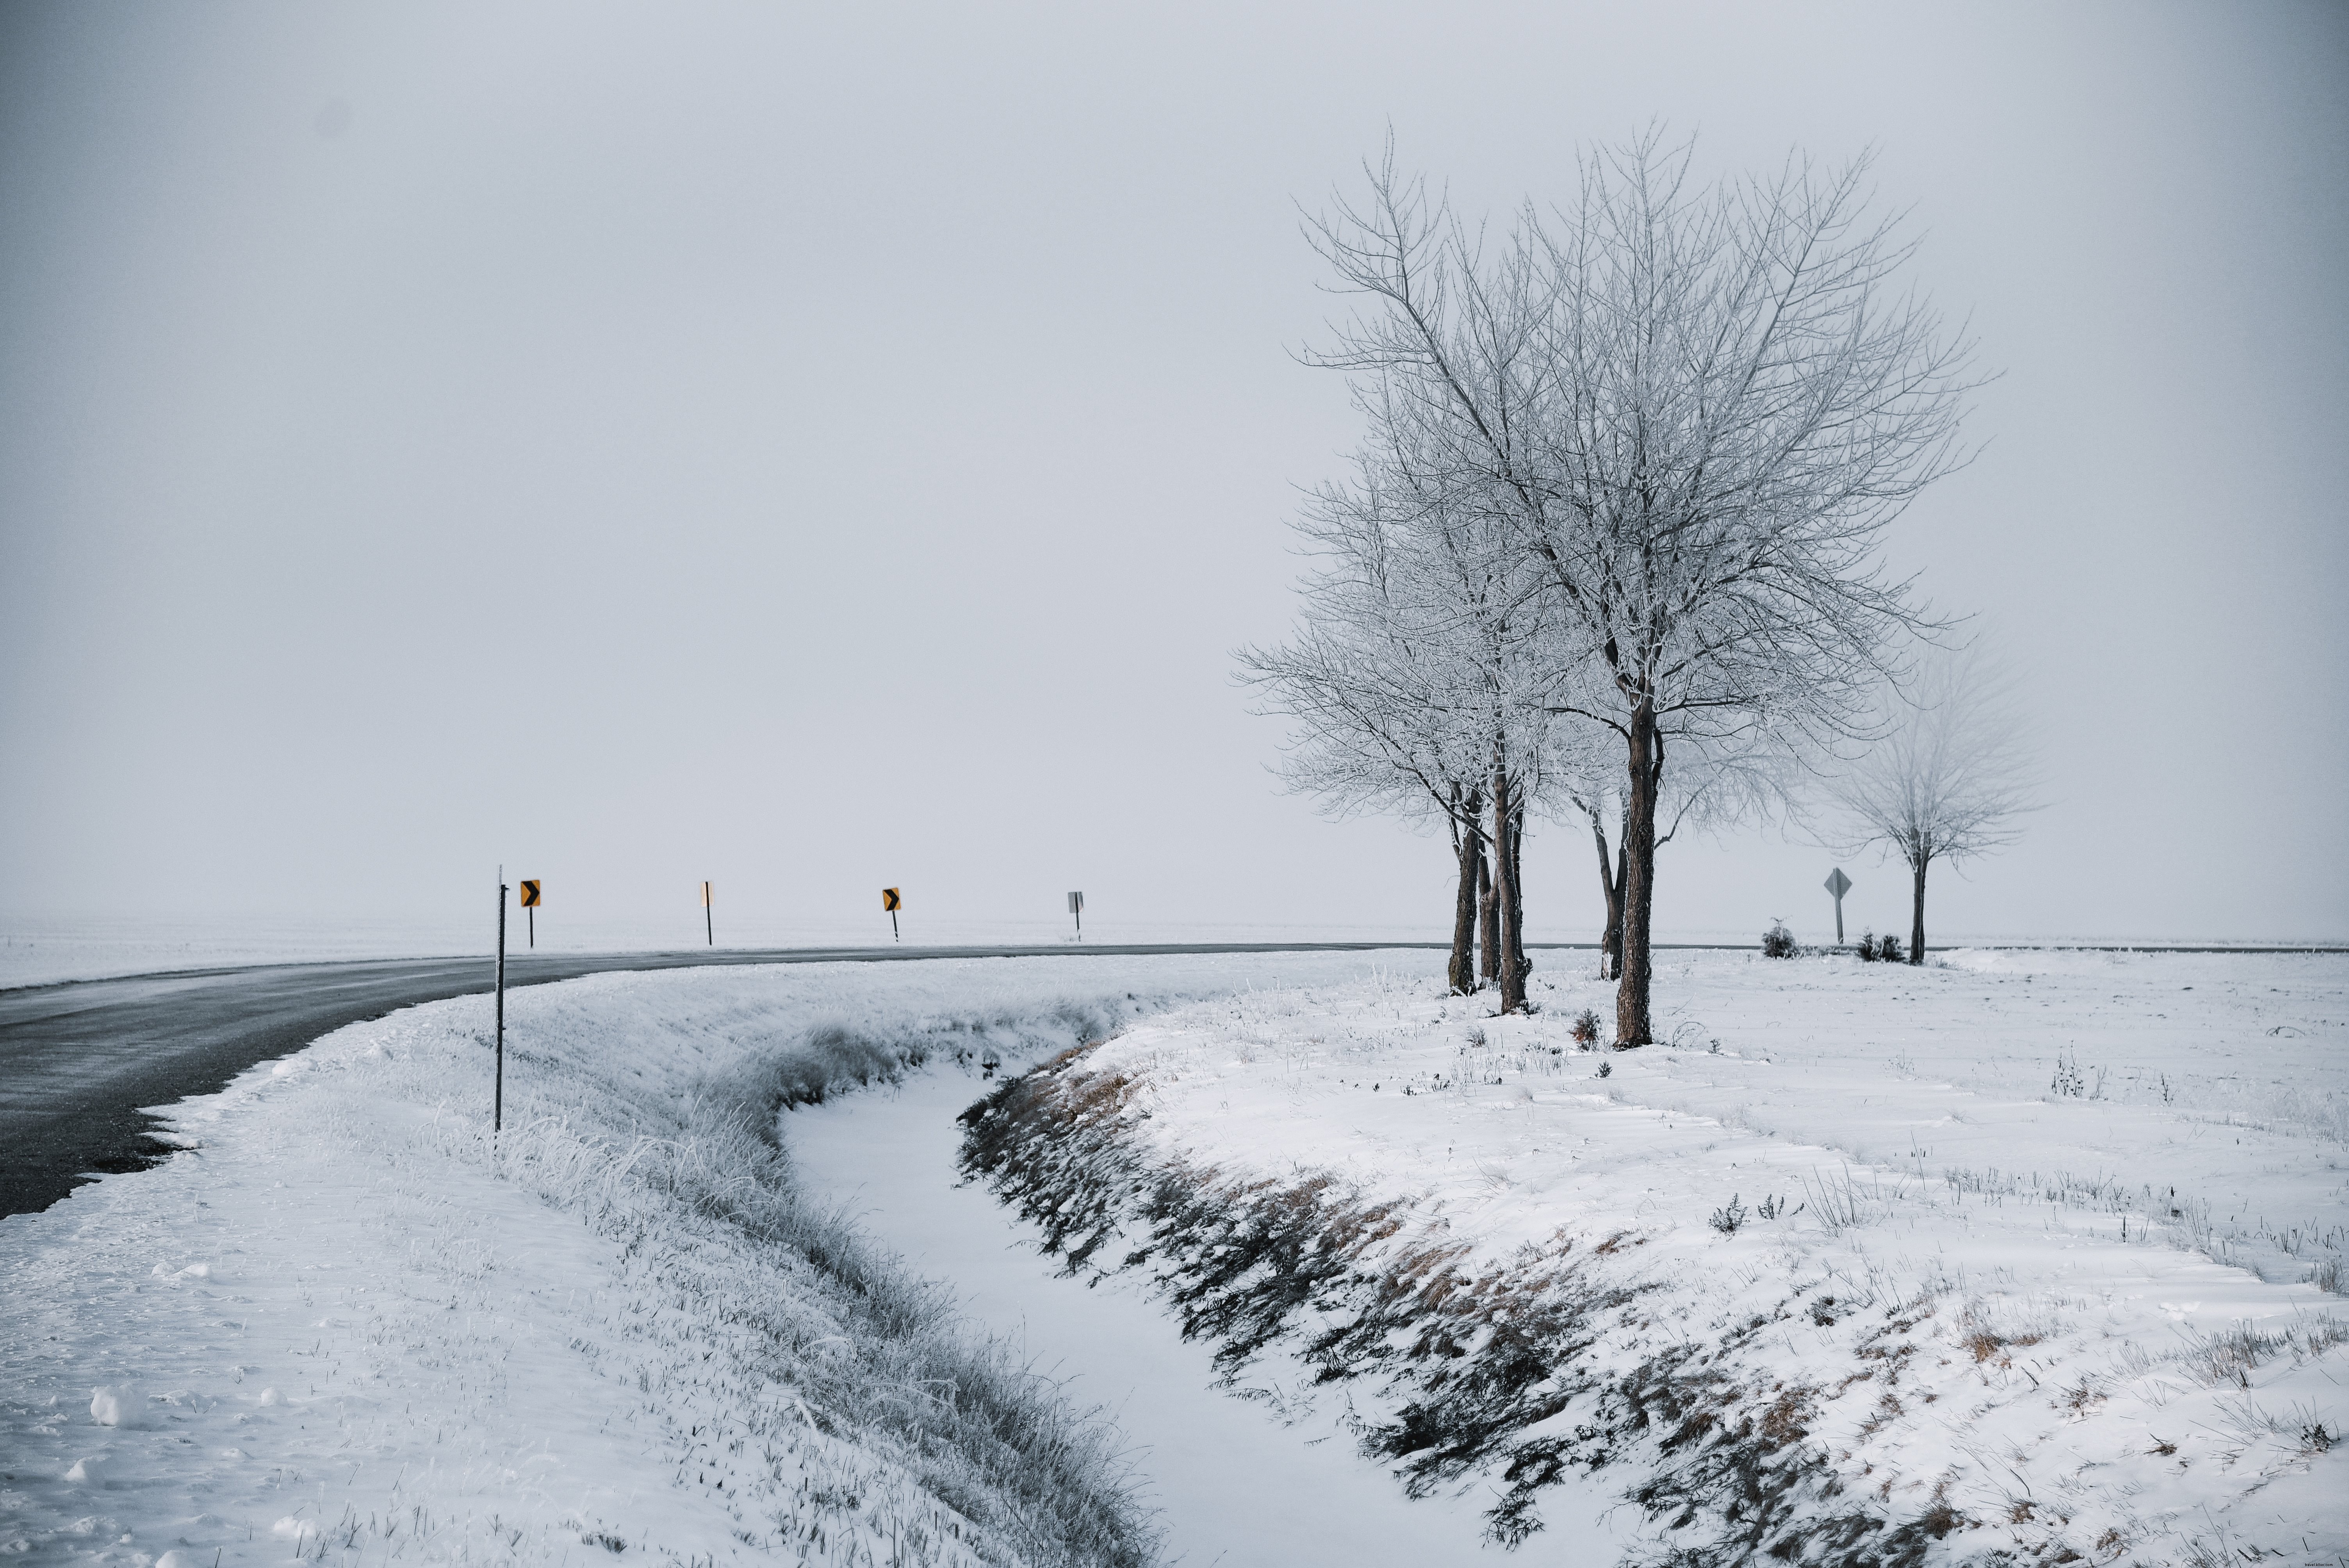 Paisaje nevado de una carretera de invierno que se curva a través de árboles Foto 